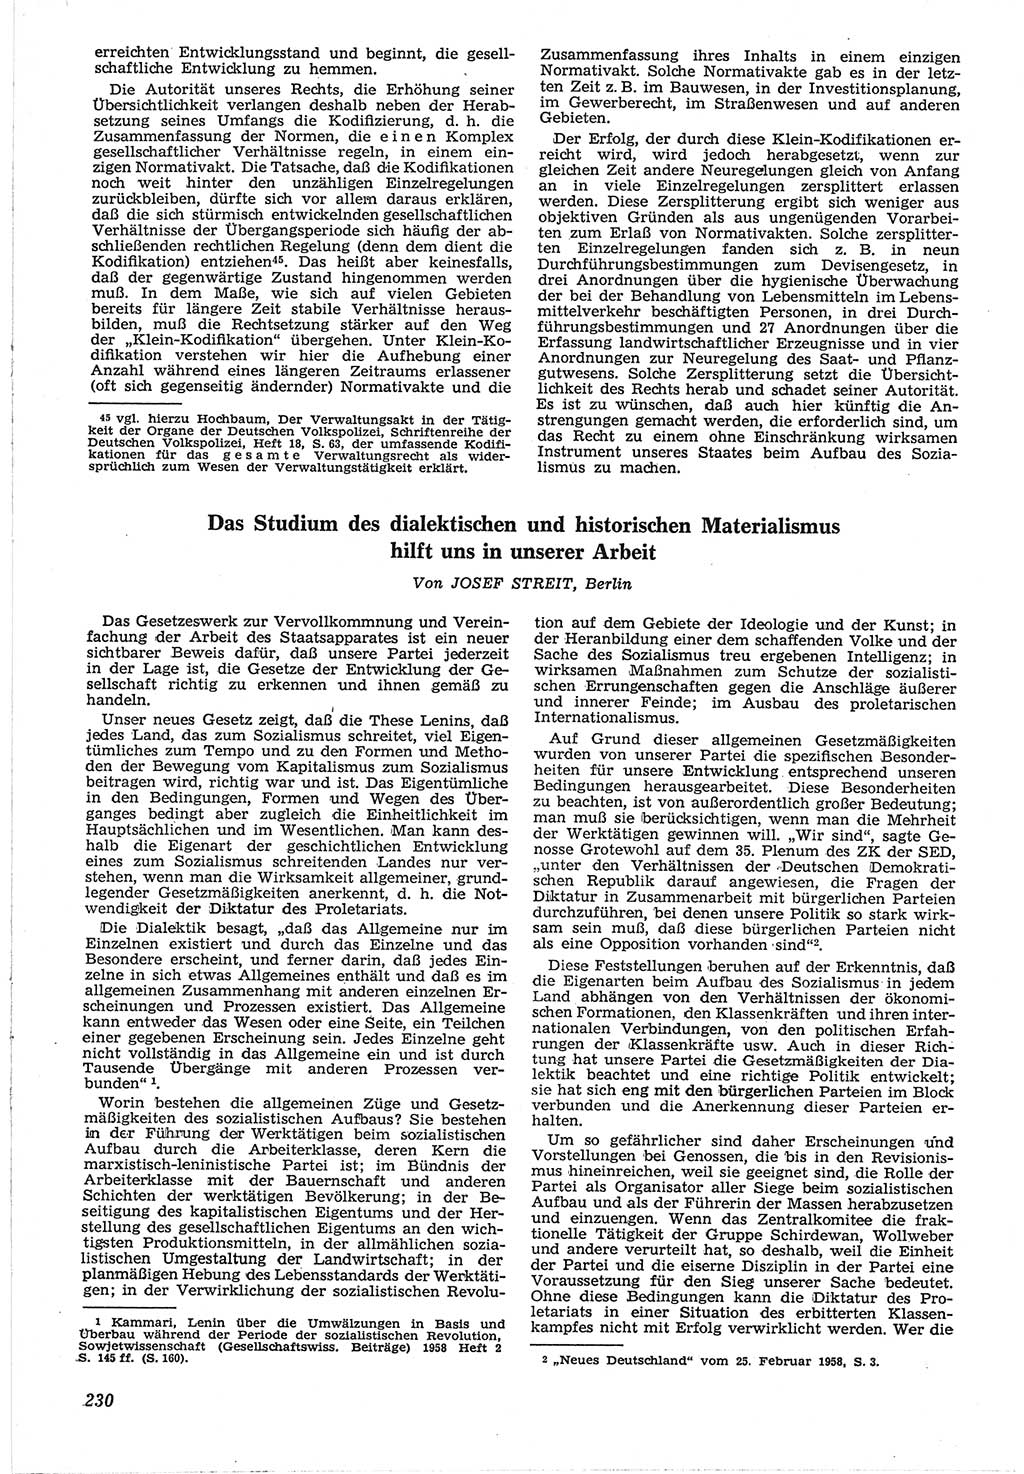 Neue Justiz (NJ), Zeitschrift für Recht und Rechtswissenschaft [Deutsche Demokratische Republik (DDR)], 12. Jahrgang 1958, Seite 230 (NJ DDR 1958, S. 230)